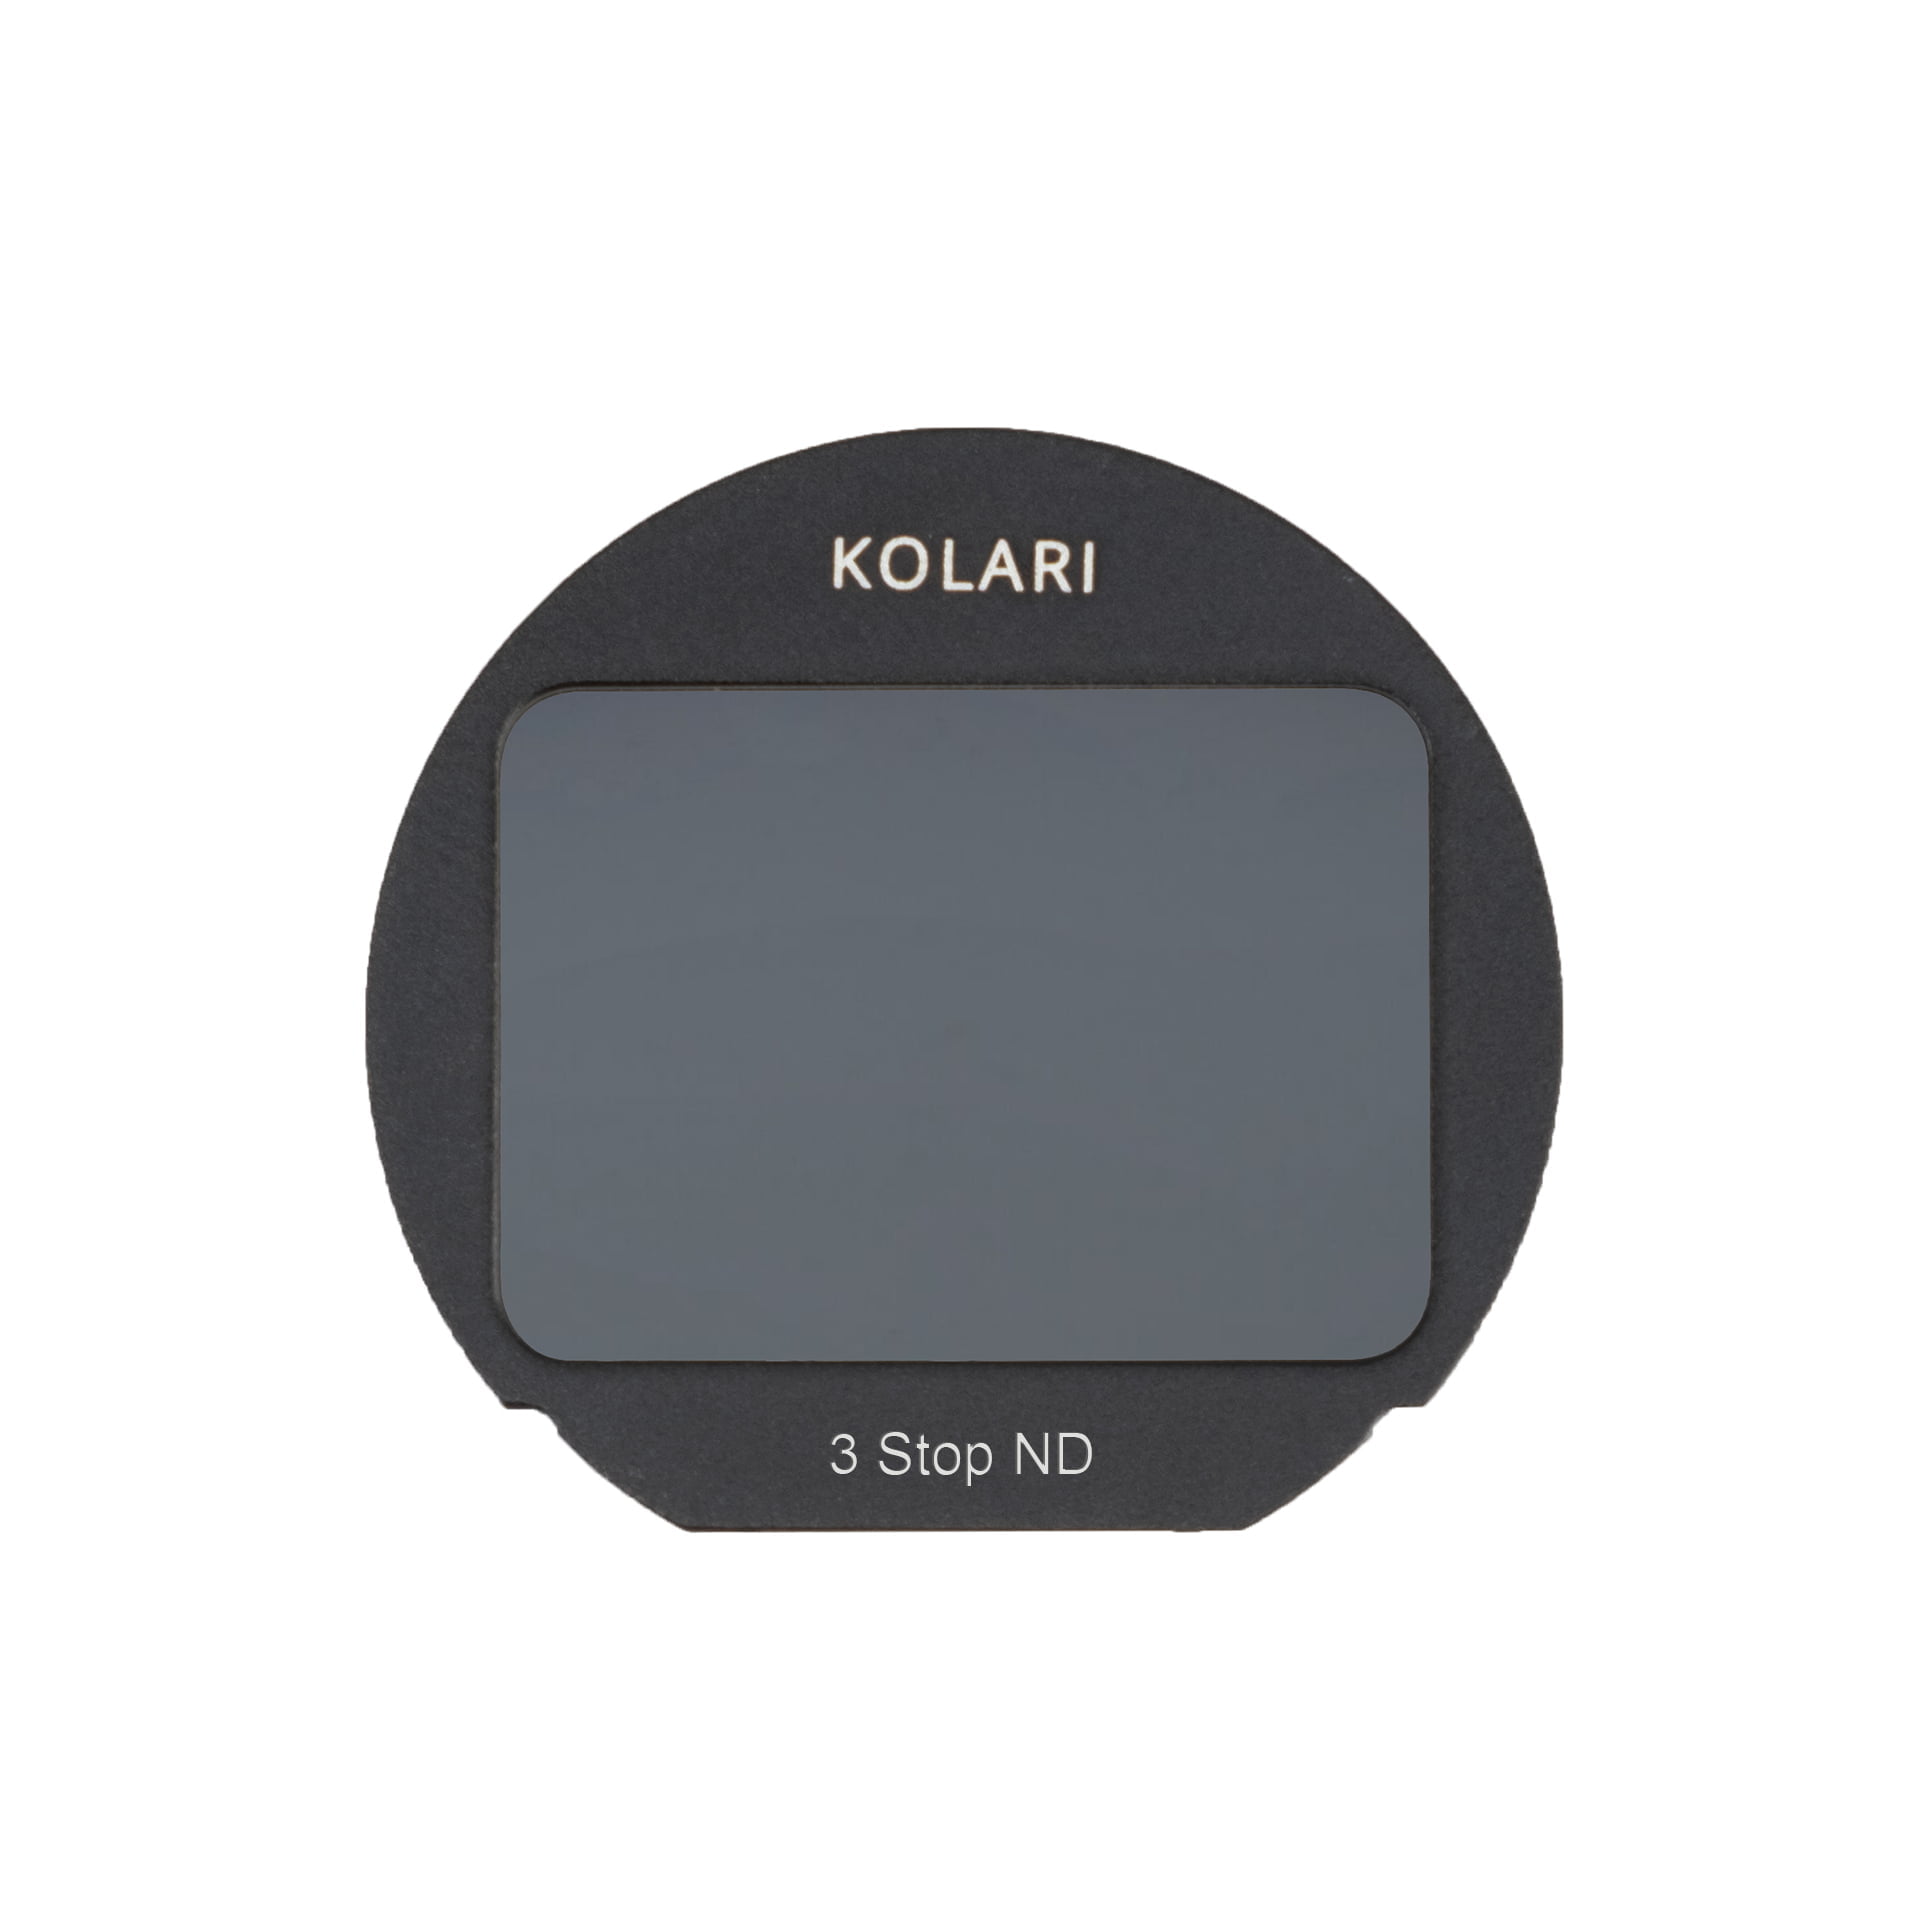 Kolari Clip in Filter Fuji 1 white background 1